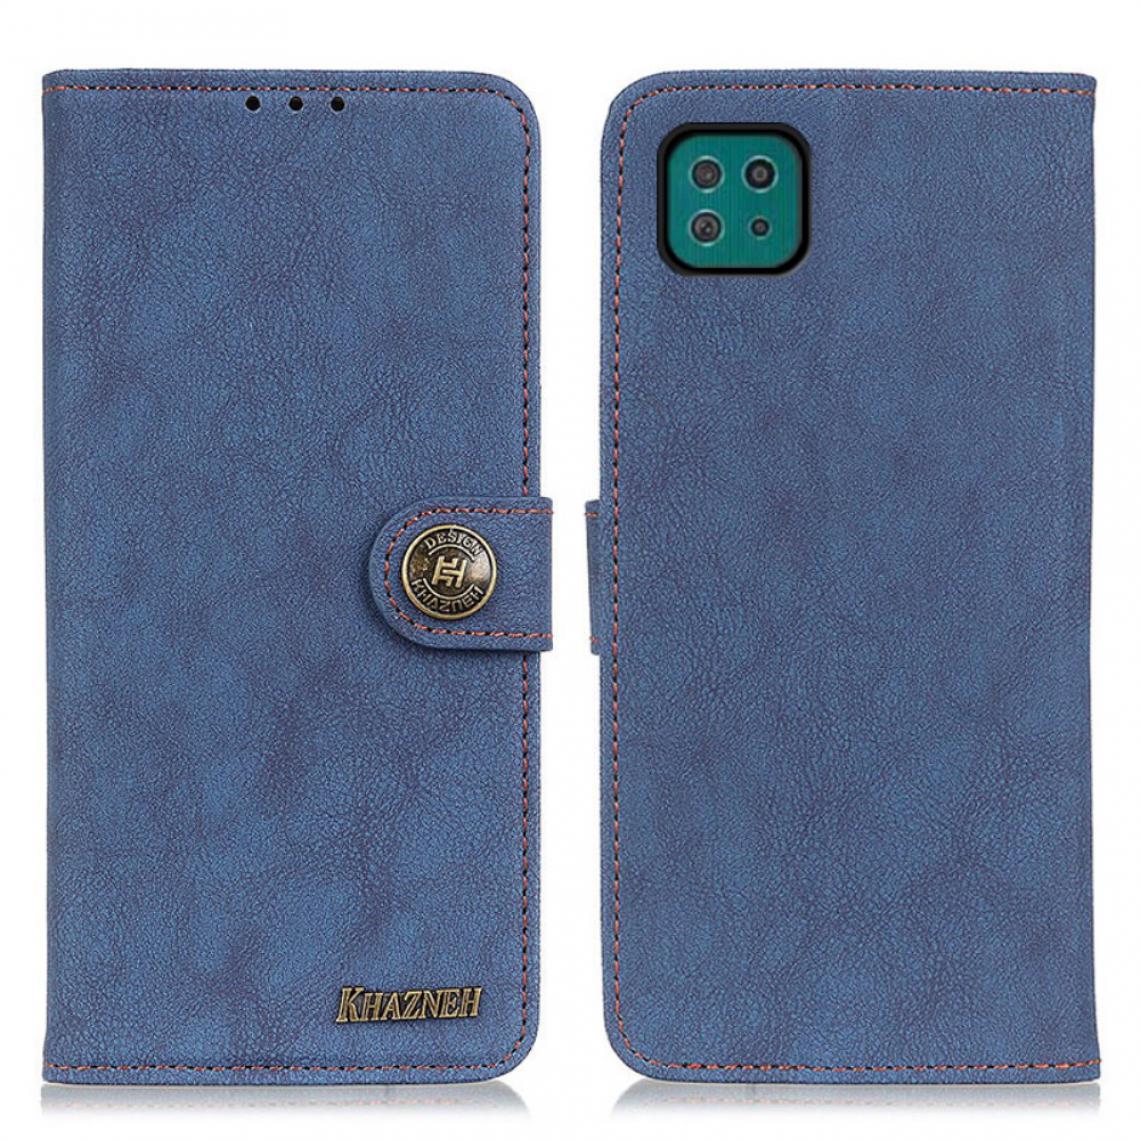 Other - Etui en PU Conception fendue de style rétro bleu pour votre Samsung Galaxy A22 5G (EU Version) - Coque, étui smartphone